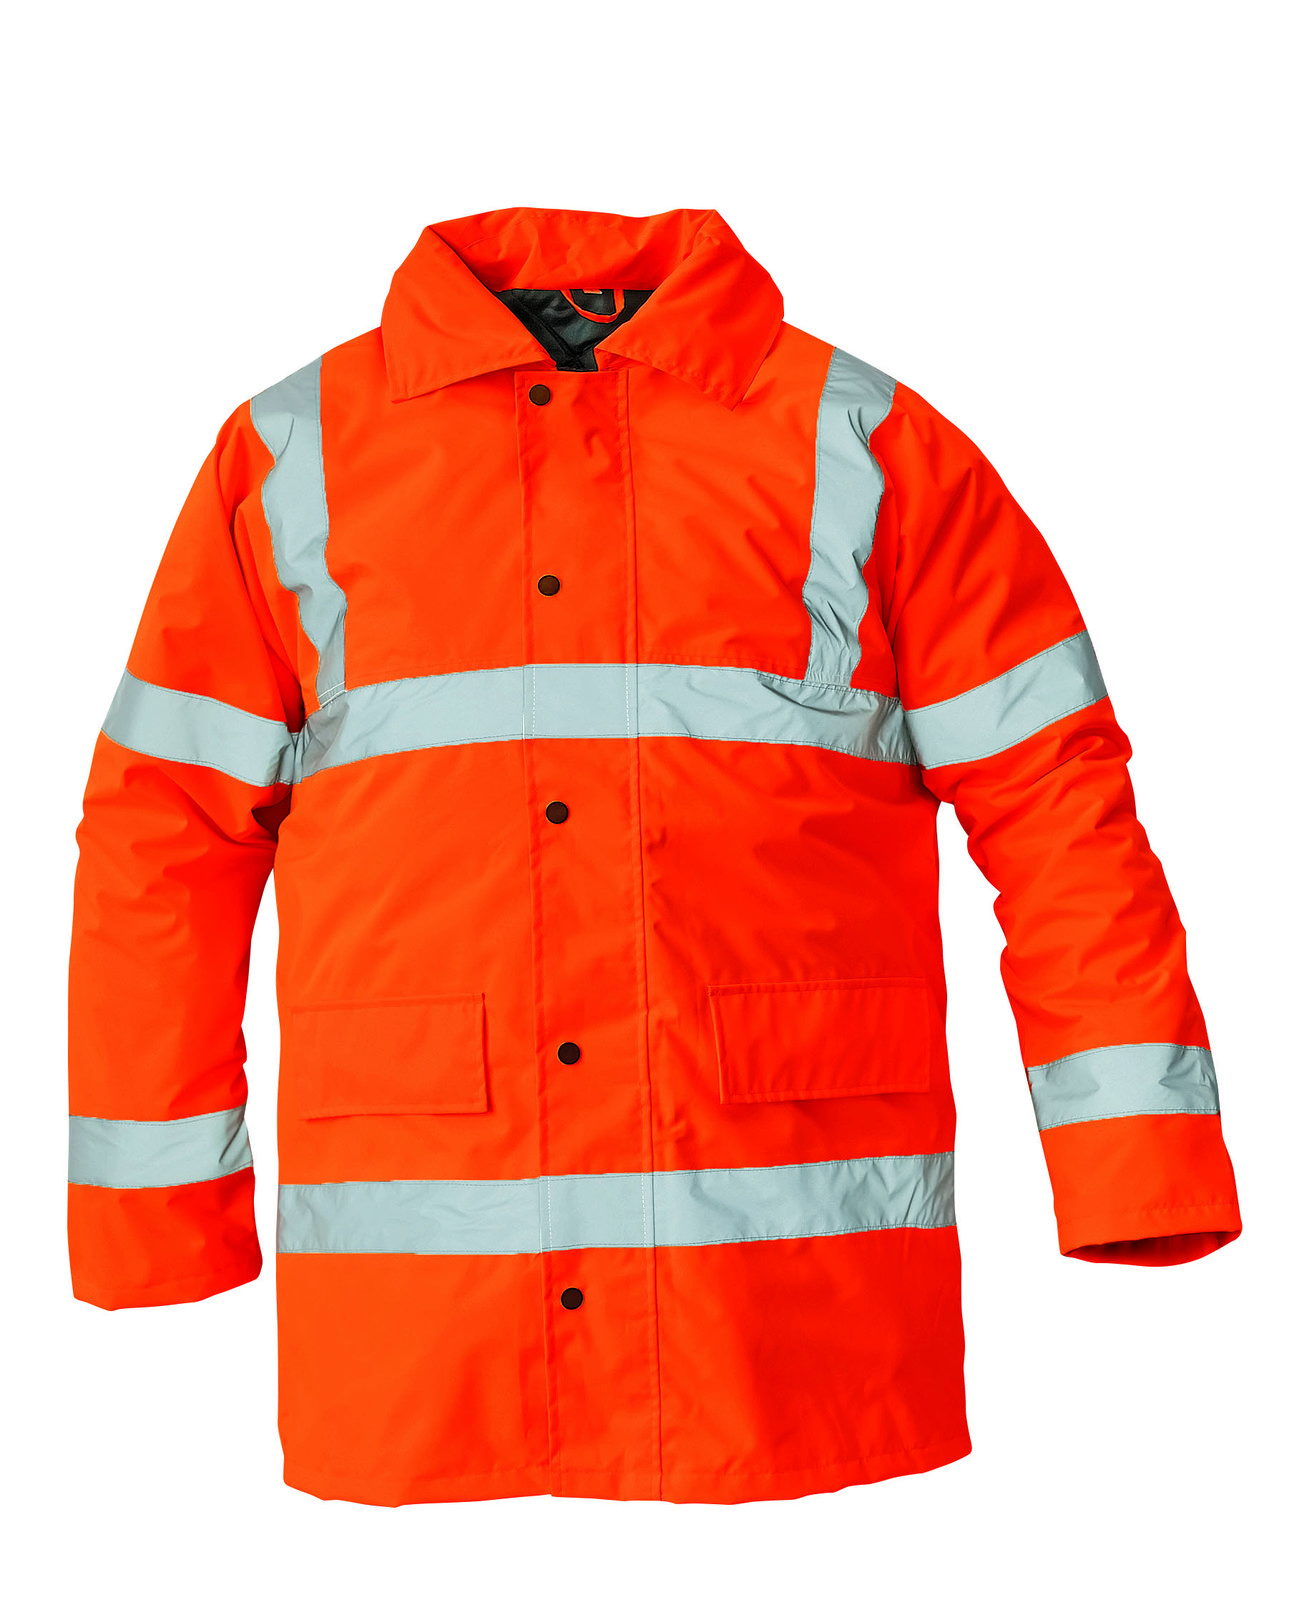 Ľahká zateplená reflexná bunda Sefton - veľkosť: M, farba: oranžová